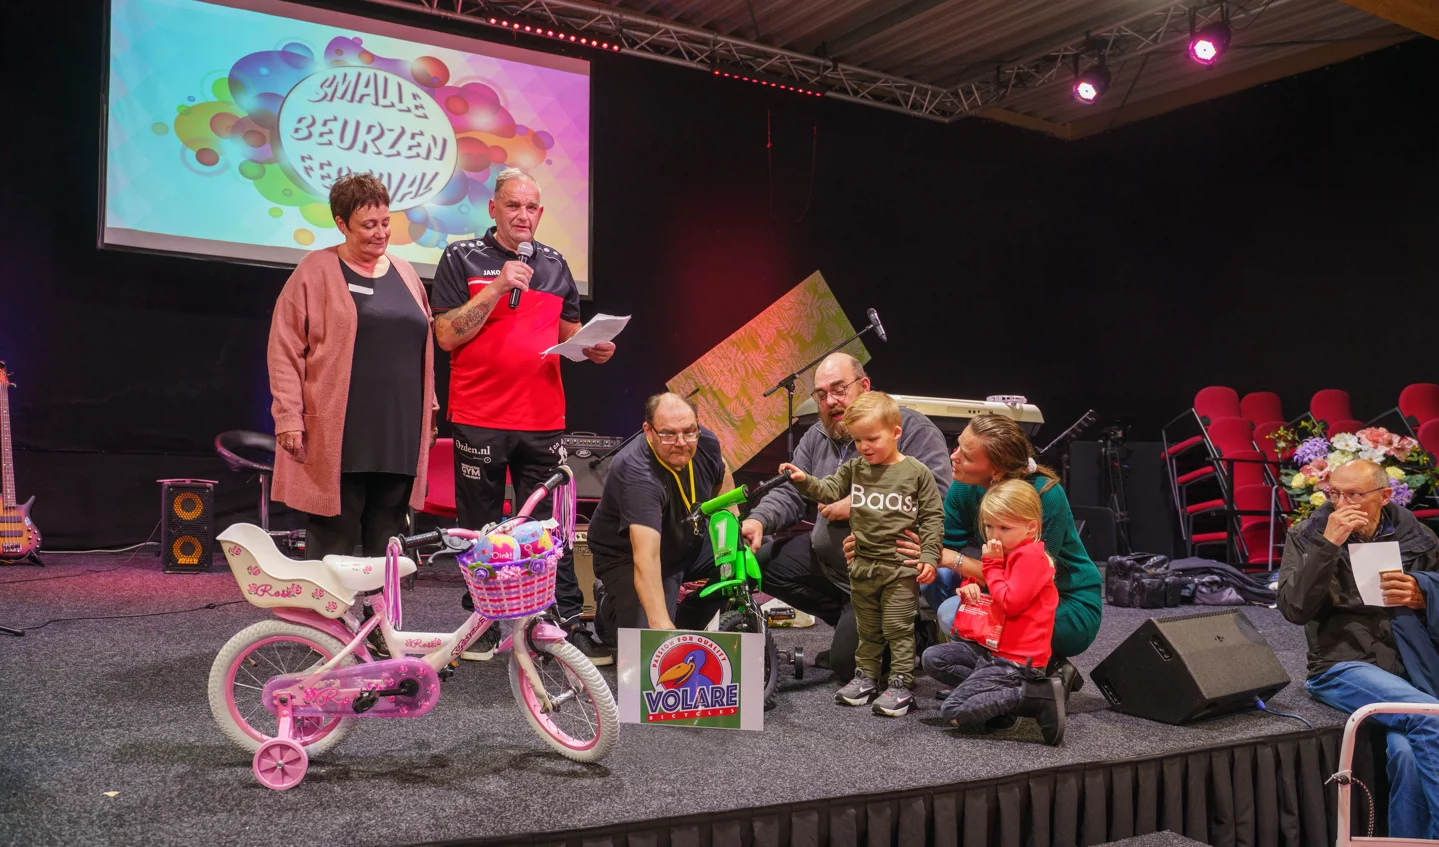 Gratis Fietsjes Actie Voor Minima deelt 54 fietsen uit in Hoorn